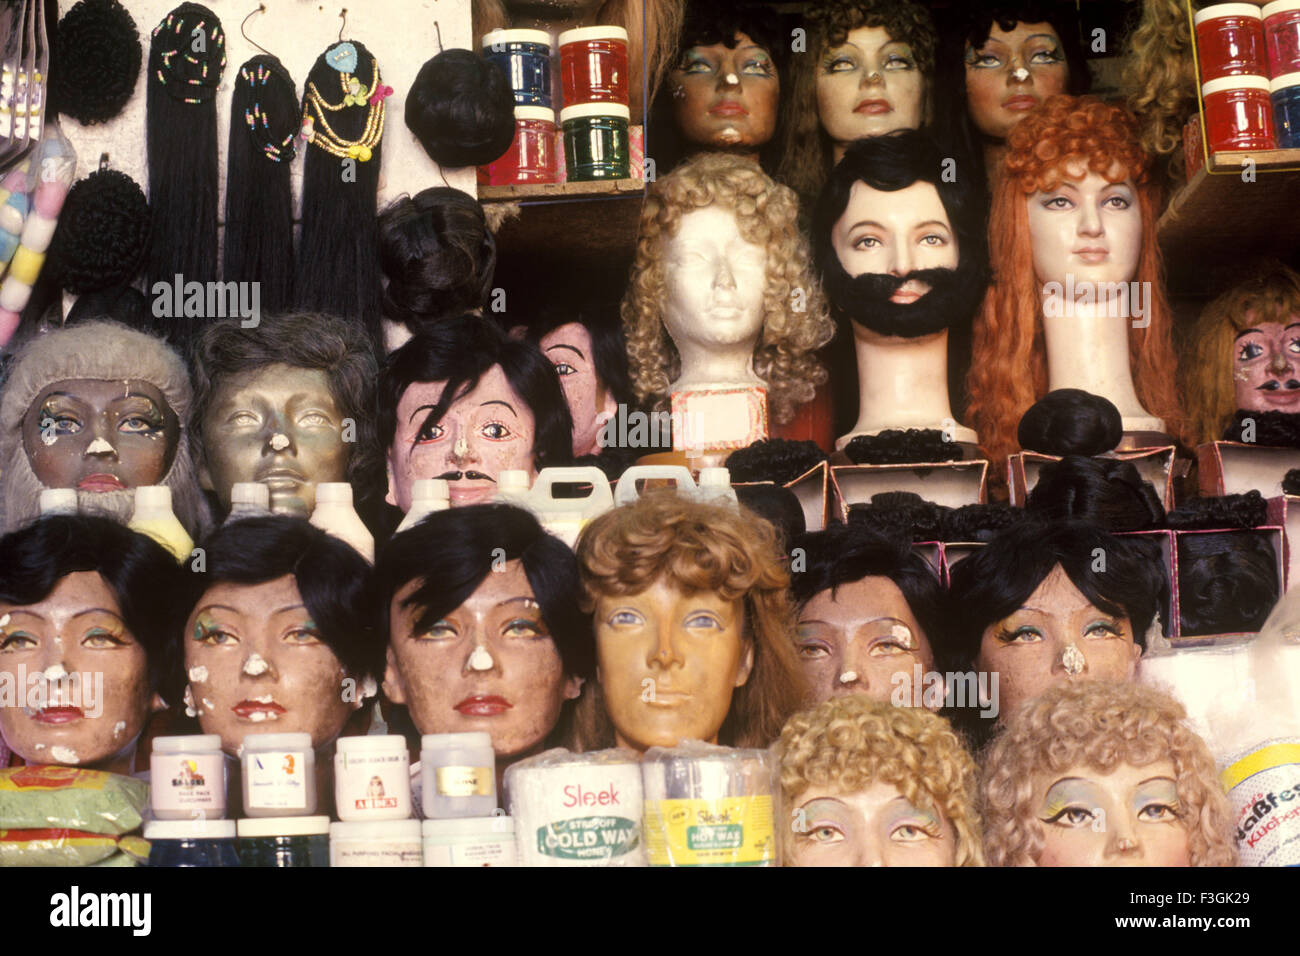 Pelucas, barbas, bigotes y cabello aparece en máscaras faciales junto con productos cosméticos en una tienda de belleza Mumbai Foto de stock